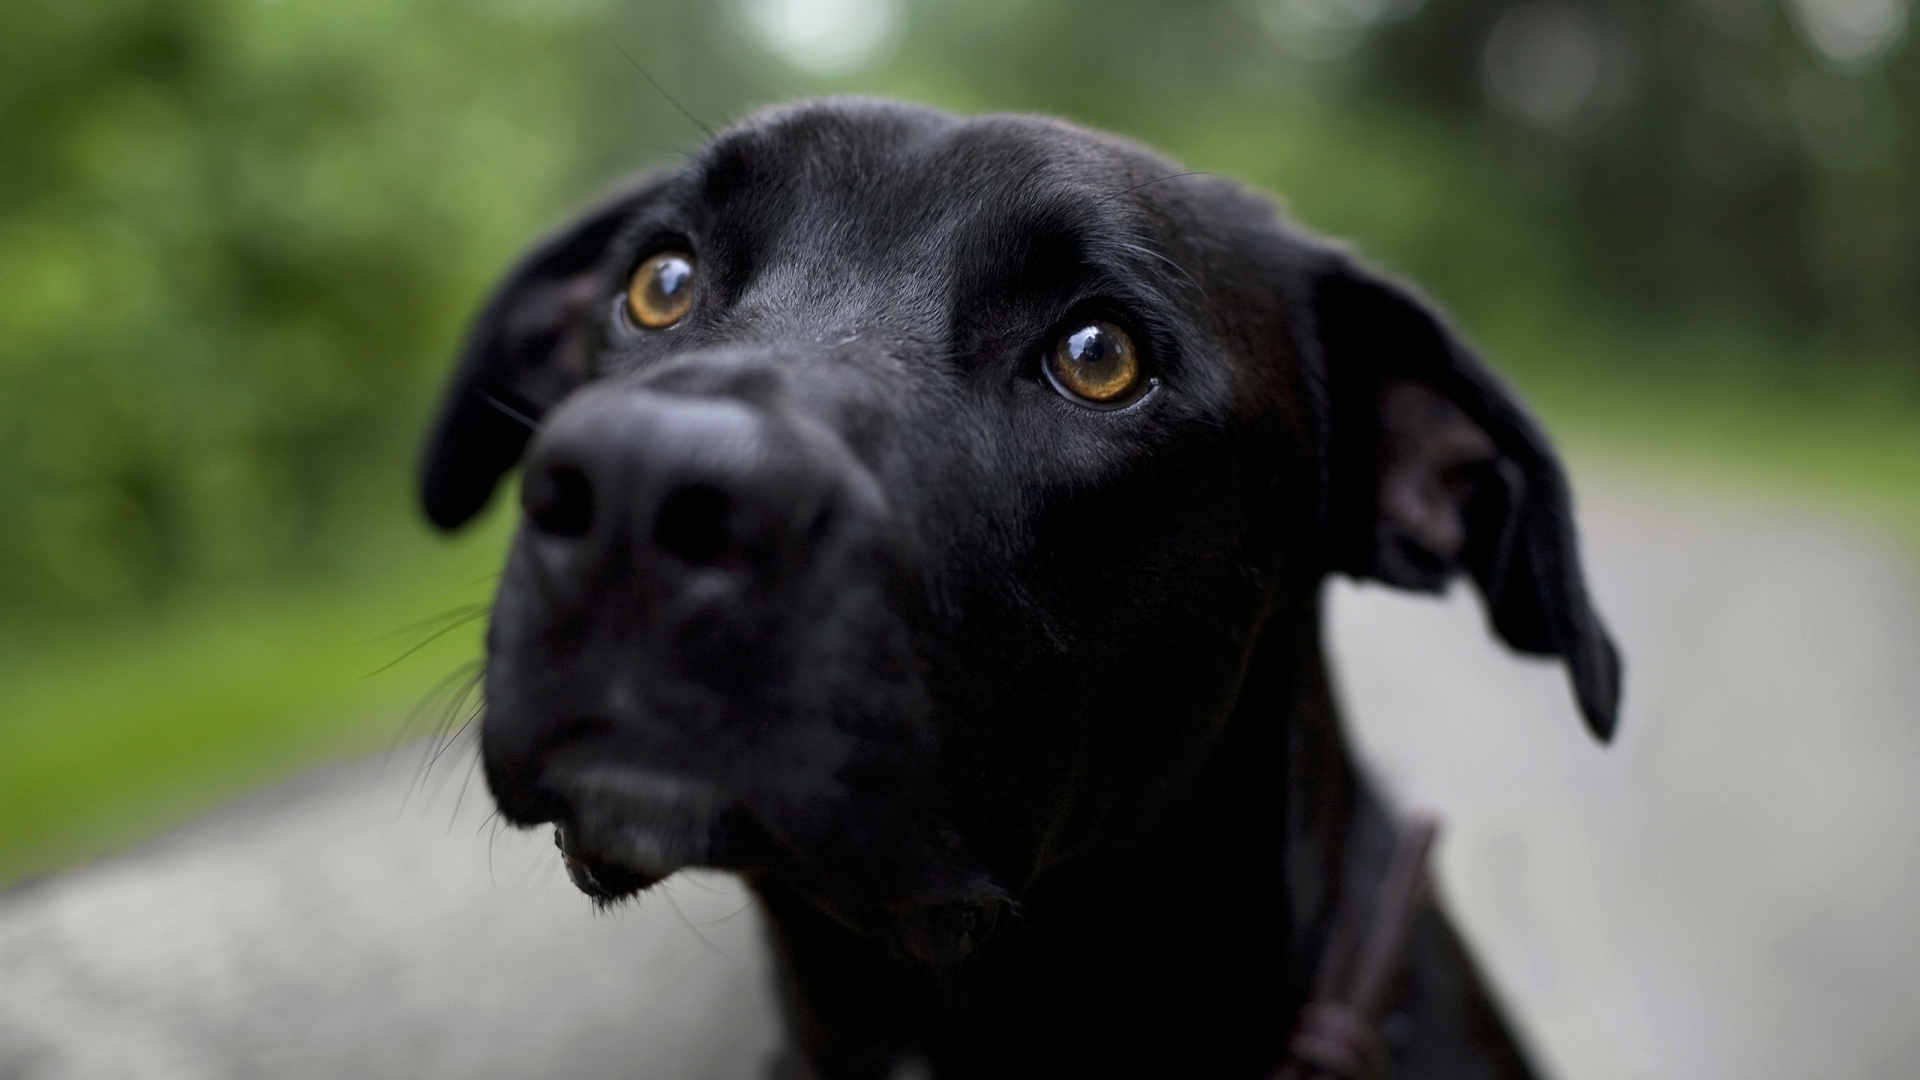 Lovely black dog for 1920 x 1080 HDTV 1080p resolution